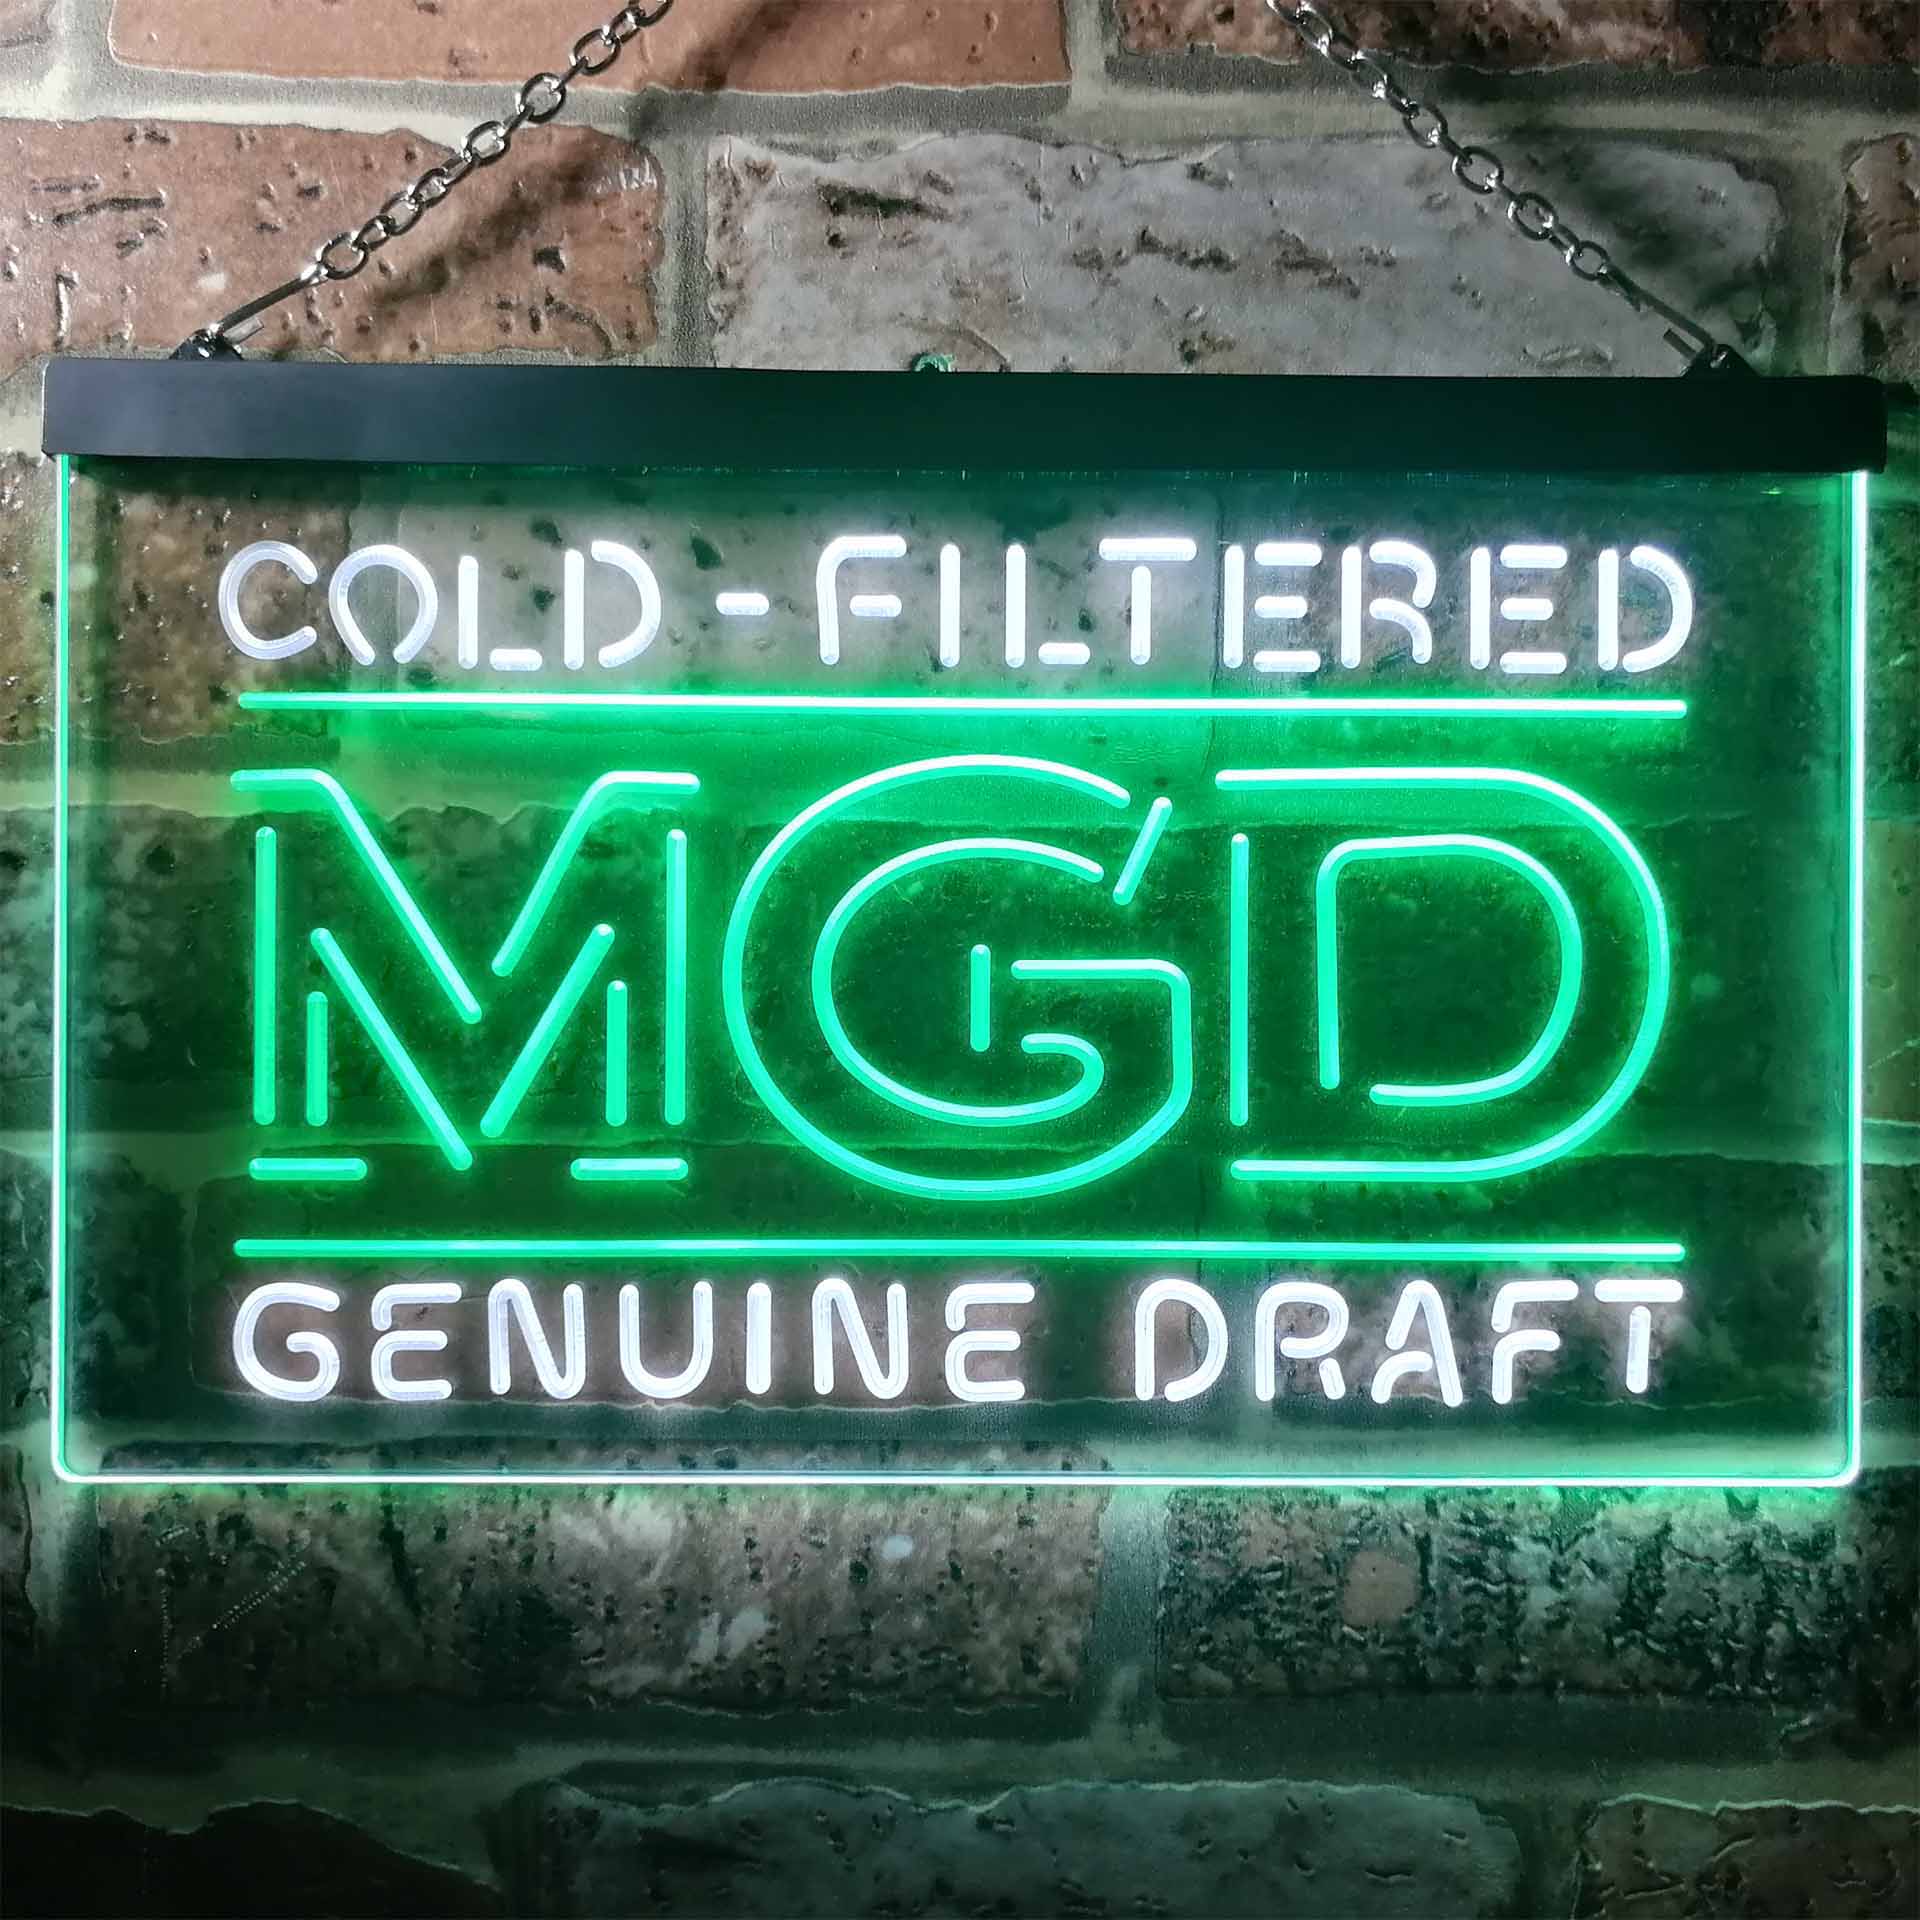 Miller MGD Genuine Draft Neon LED Sign